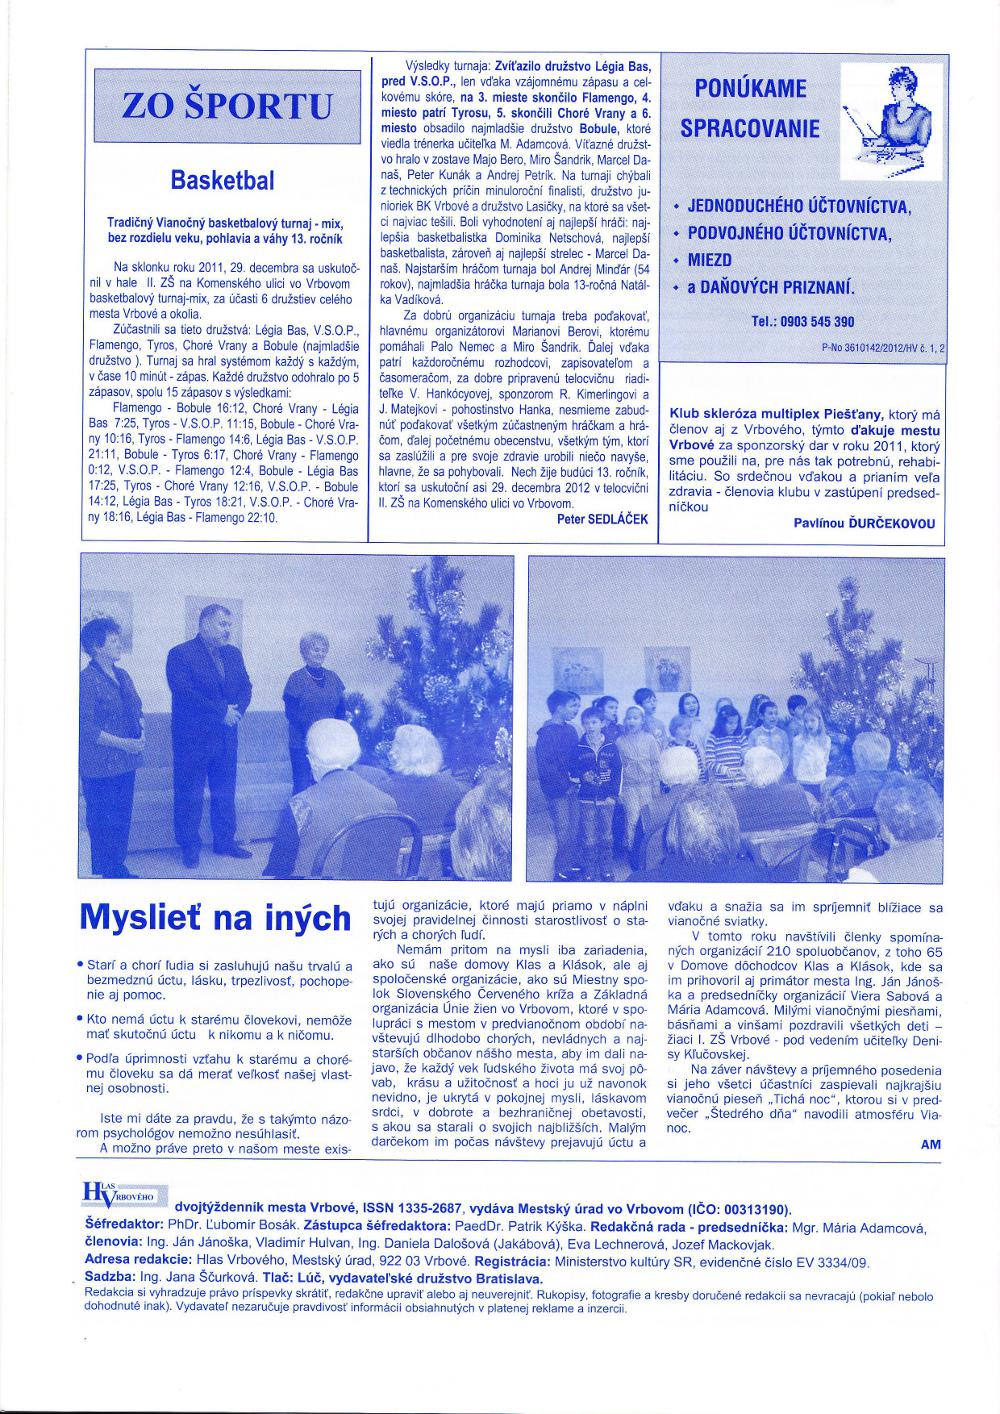 Hlas Vrbového 01/2012, strana 10